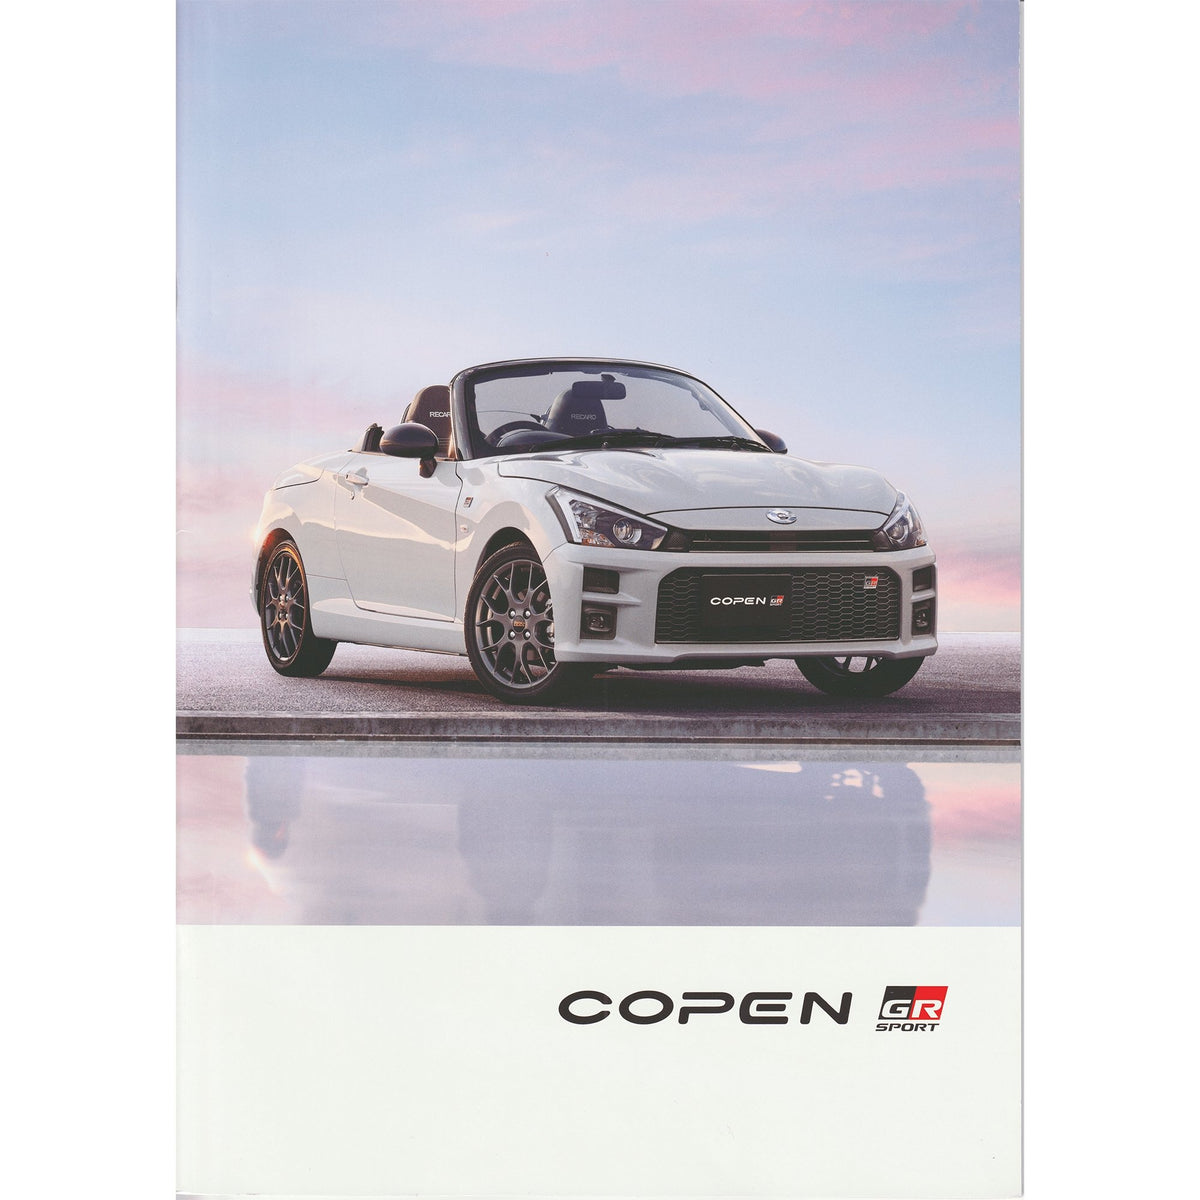 New JDM Japan Toyota Copen GR Sport Manufacturer Catalog Brochure Set - Sugoi JDM